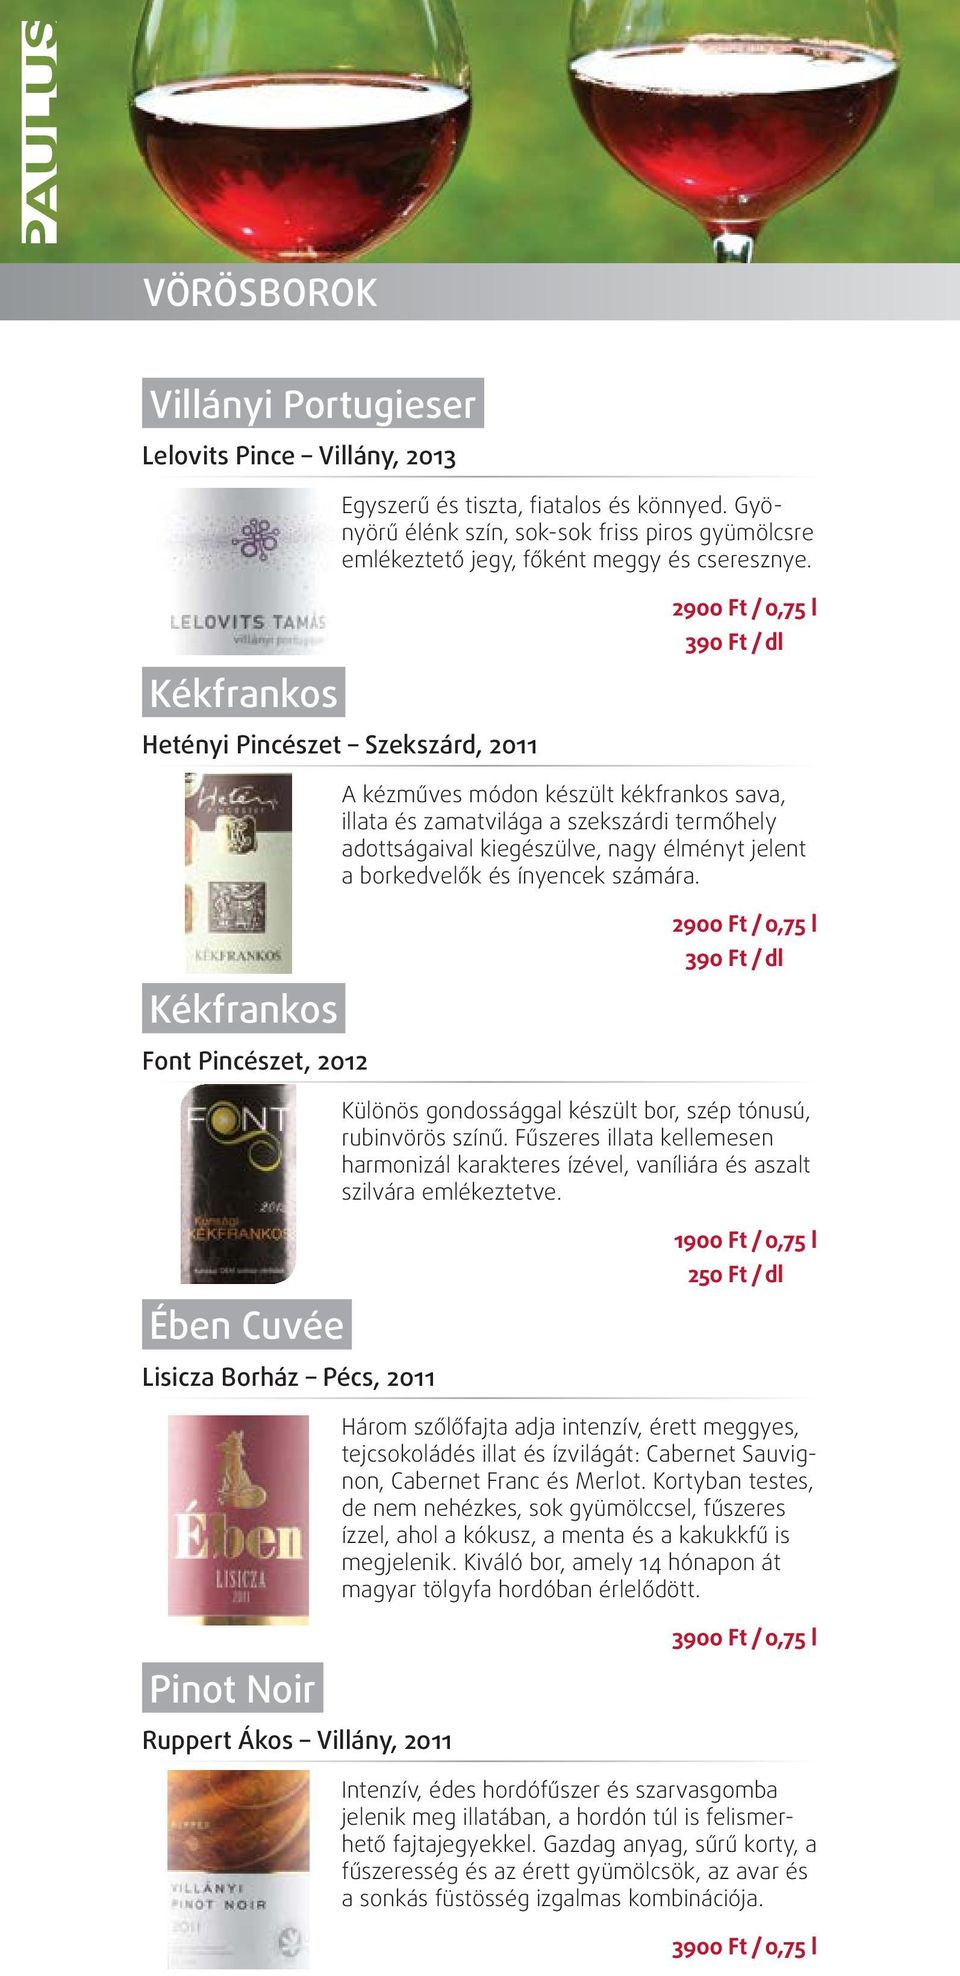 jelent a borkedvelők és ínyencek számára. kékfrankos Font pincészet, 2012 2900 Ft / 0,75 l / dl Különös gondossággal készült bor, szép tónusú, rubinvörös színű.